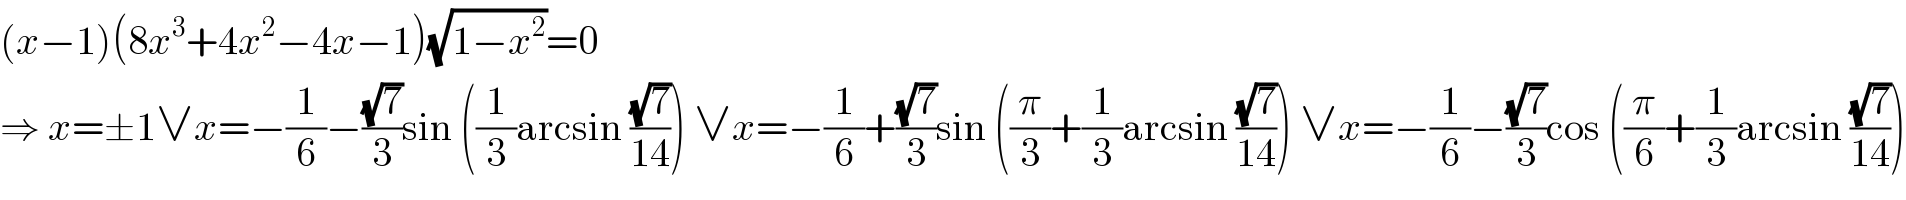 (x−1)(8x^3 +4x^2 −4x−1)(√(1−x^2 ))=0  ⇒ x=±1∨x=−(1/6)−((√7)/3)sin ((1/3)arcsin ((√7)/(14))) ∨x=−(1/6)+((√7)/3)sin ((π/3)+(1/3)arcsin ((√7)/(14))) ∨x=−(1/6)−((√7)/3)cos ((π/6)+(1/3)arcsin ((√7)/(14)))  